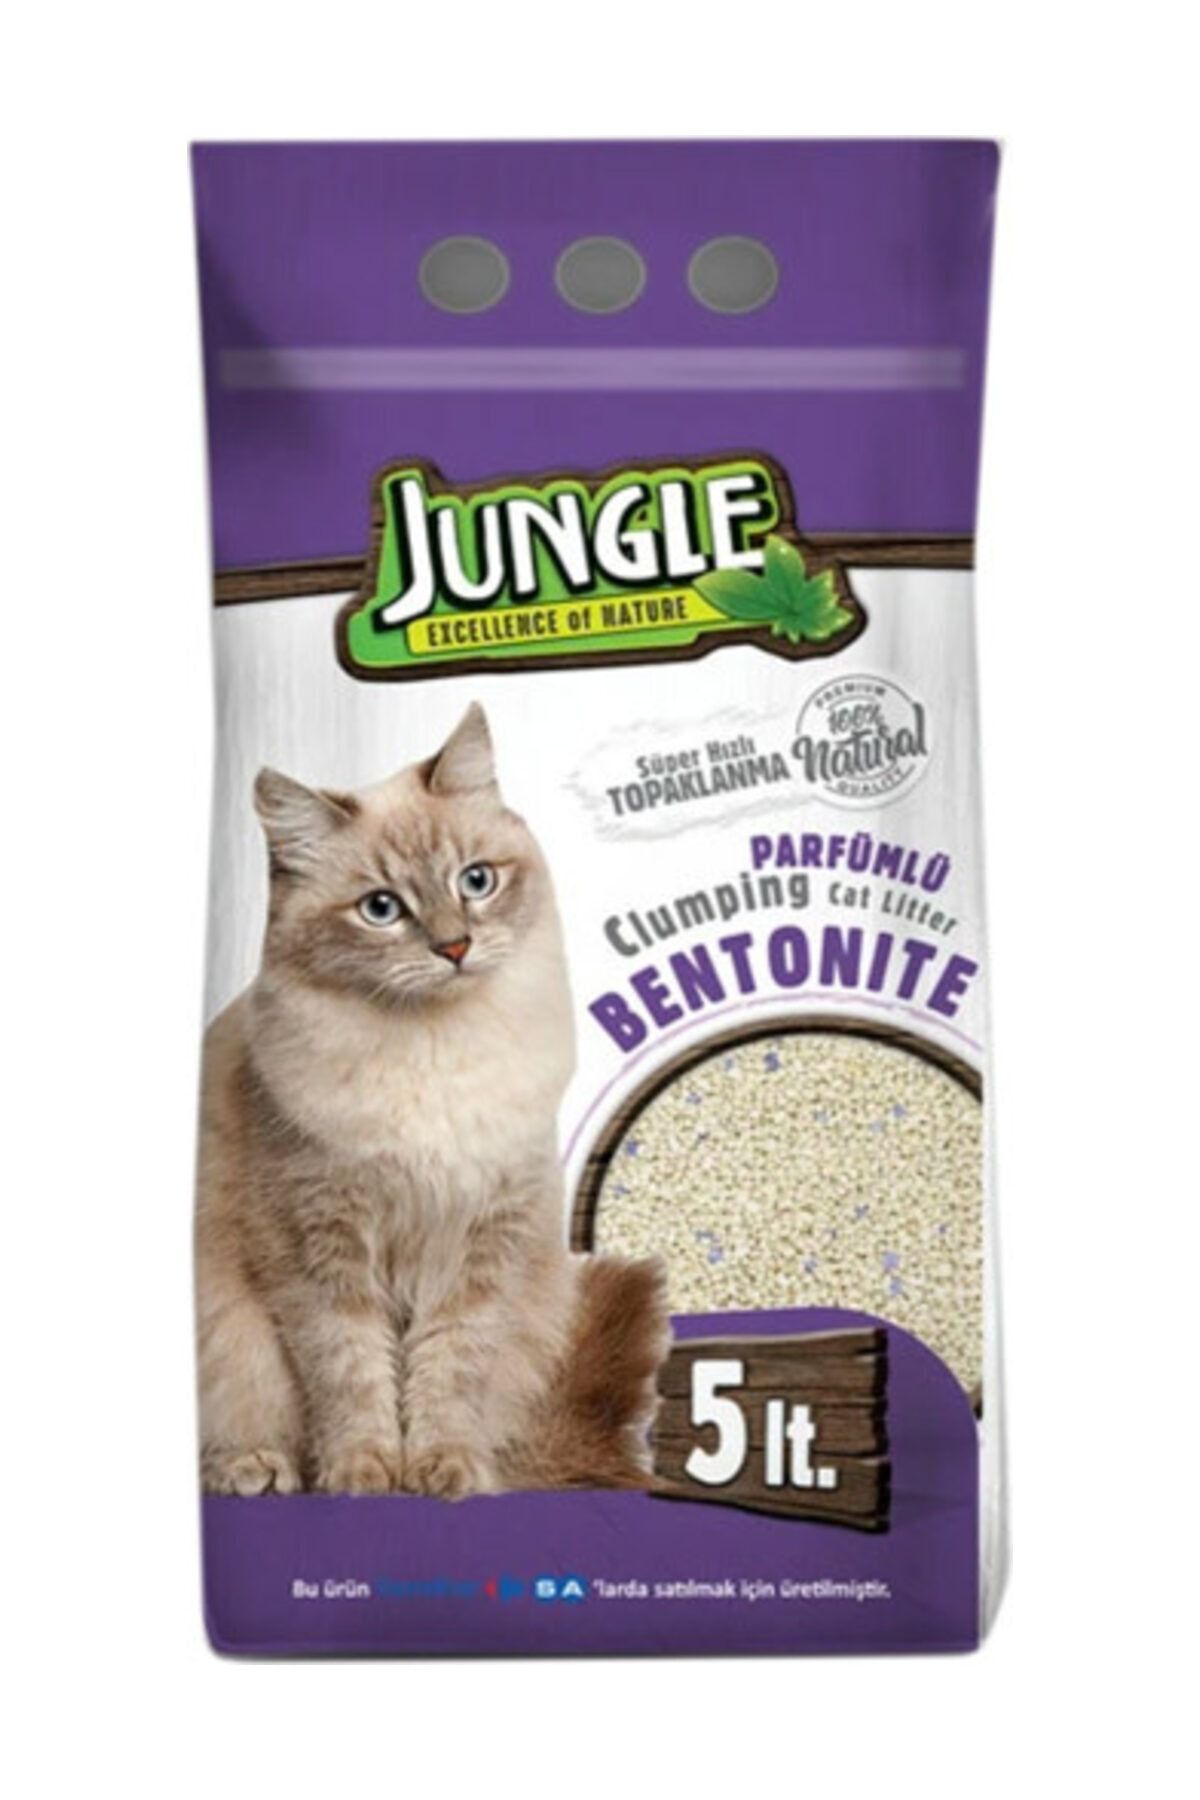 Jungle Parfümlü Kedi Kumu 5 litre